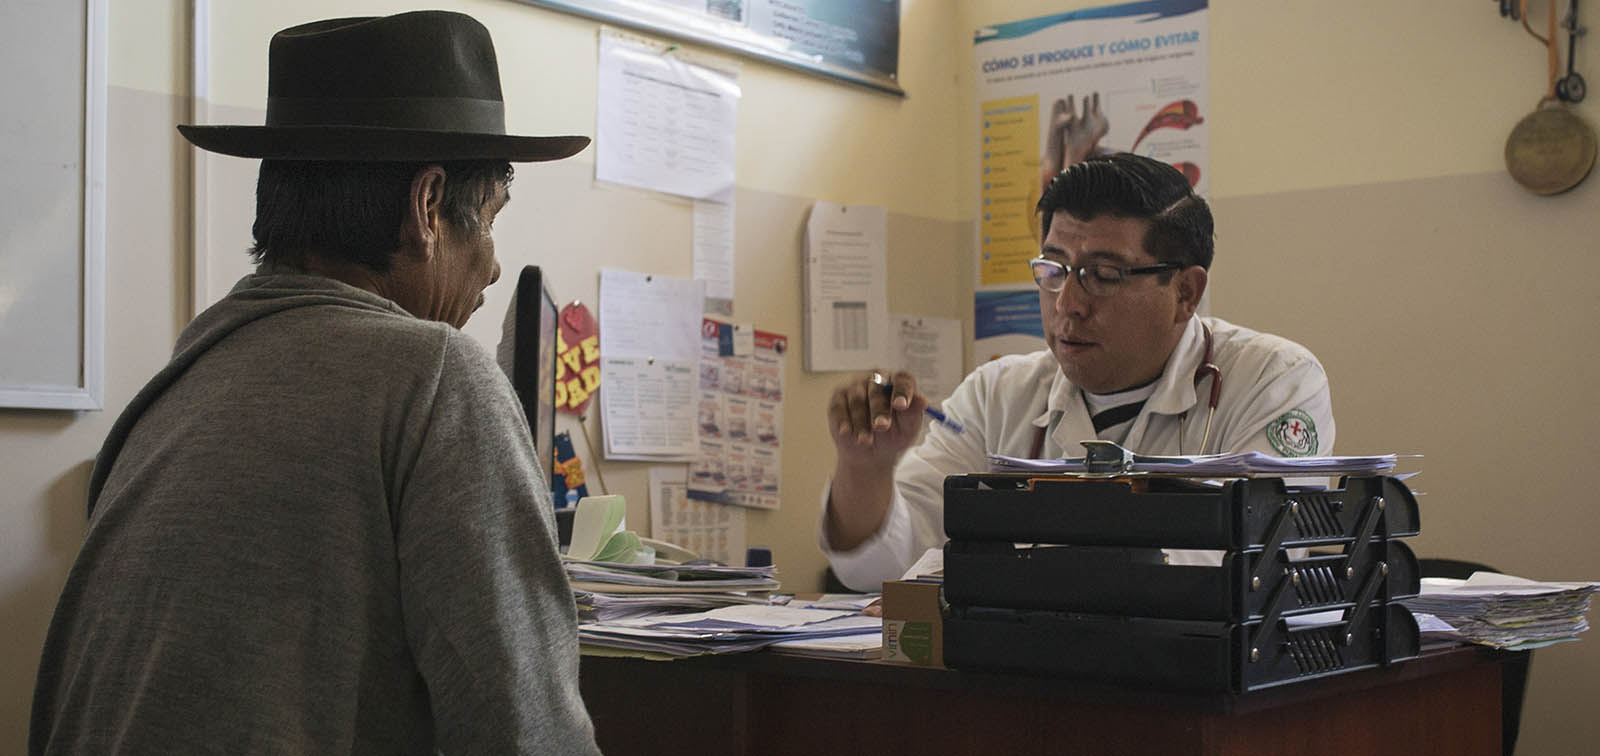 Centre de salut de Cochabamba, Bolivia. Foto d'Ana Ferreira.